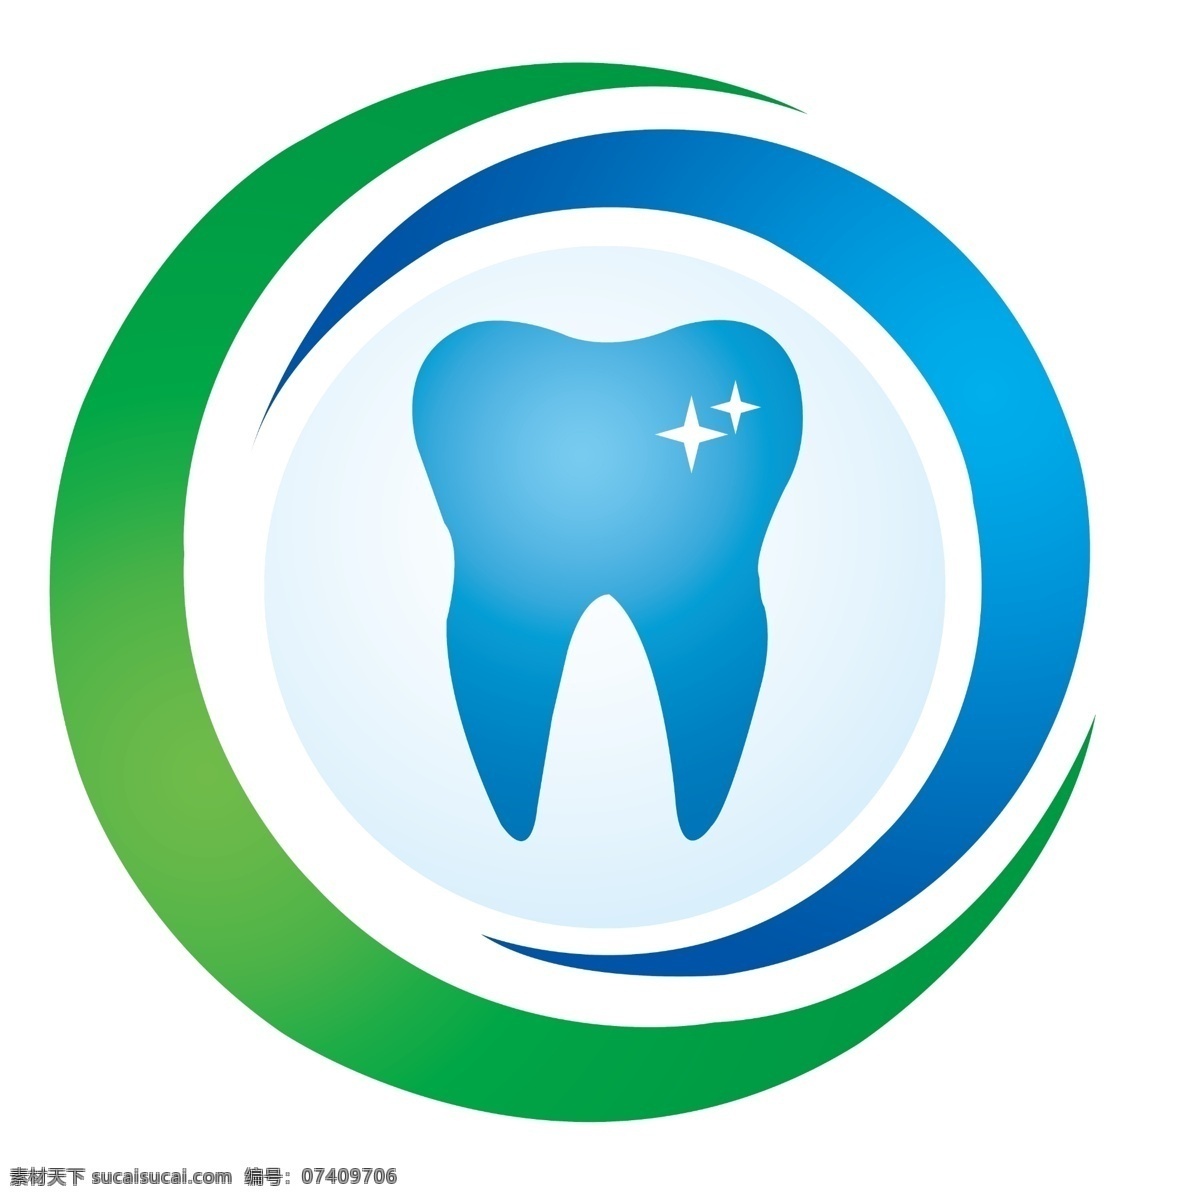 口腔诊所 logo图片 标志 分层 高清 cmyk色值 标志图标 公共标识标志